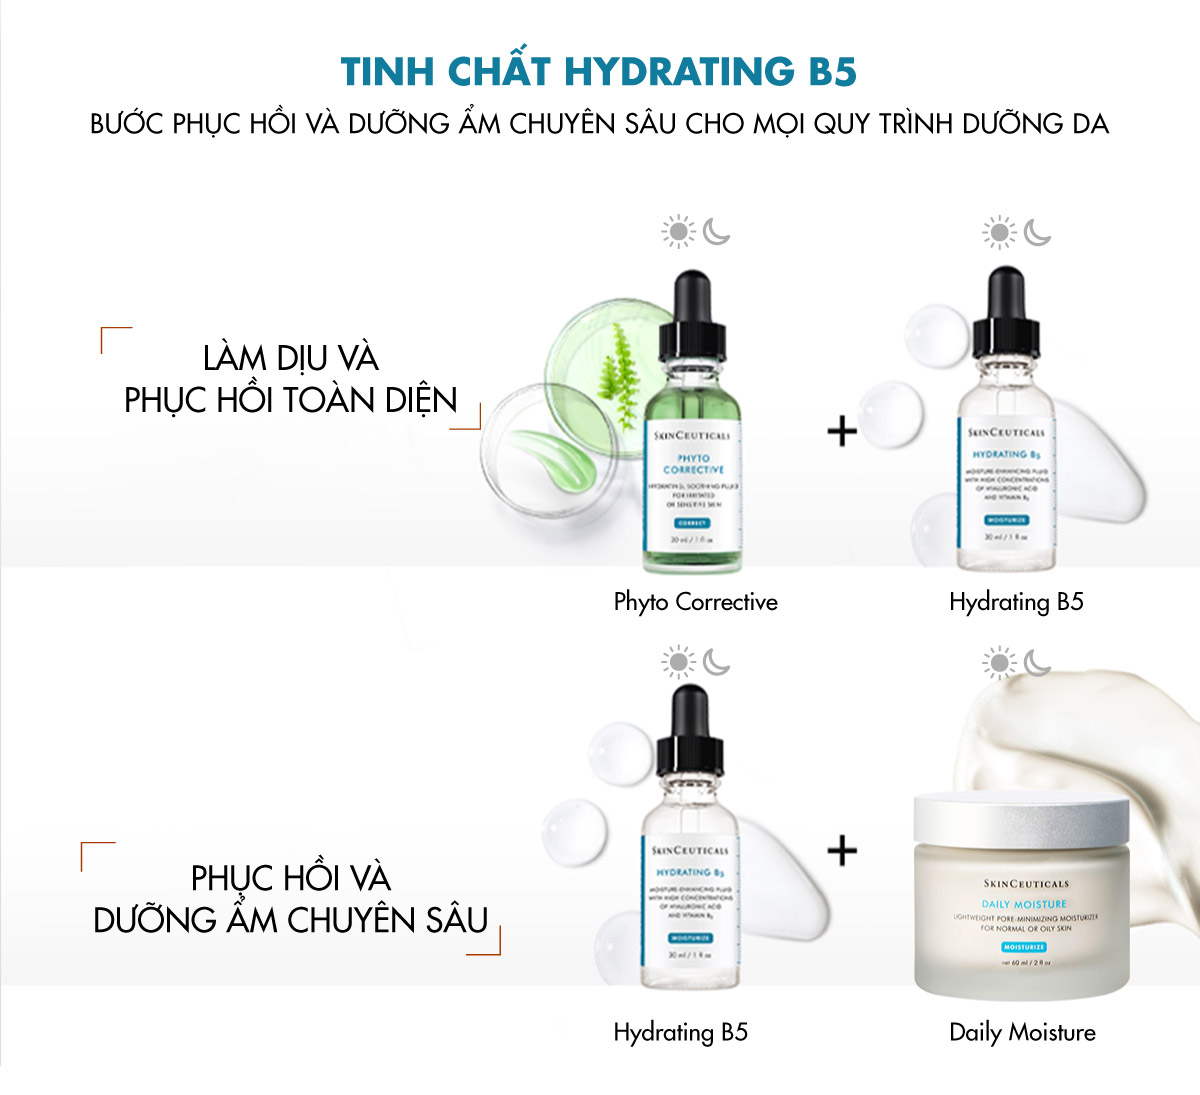 Tinh Chất SkinCeuticals Hydrating B5 là bước phục hồi và dưỡng ẩm chuyên sâu cho mọi quy trình dưỡng da